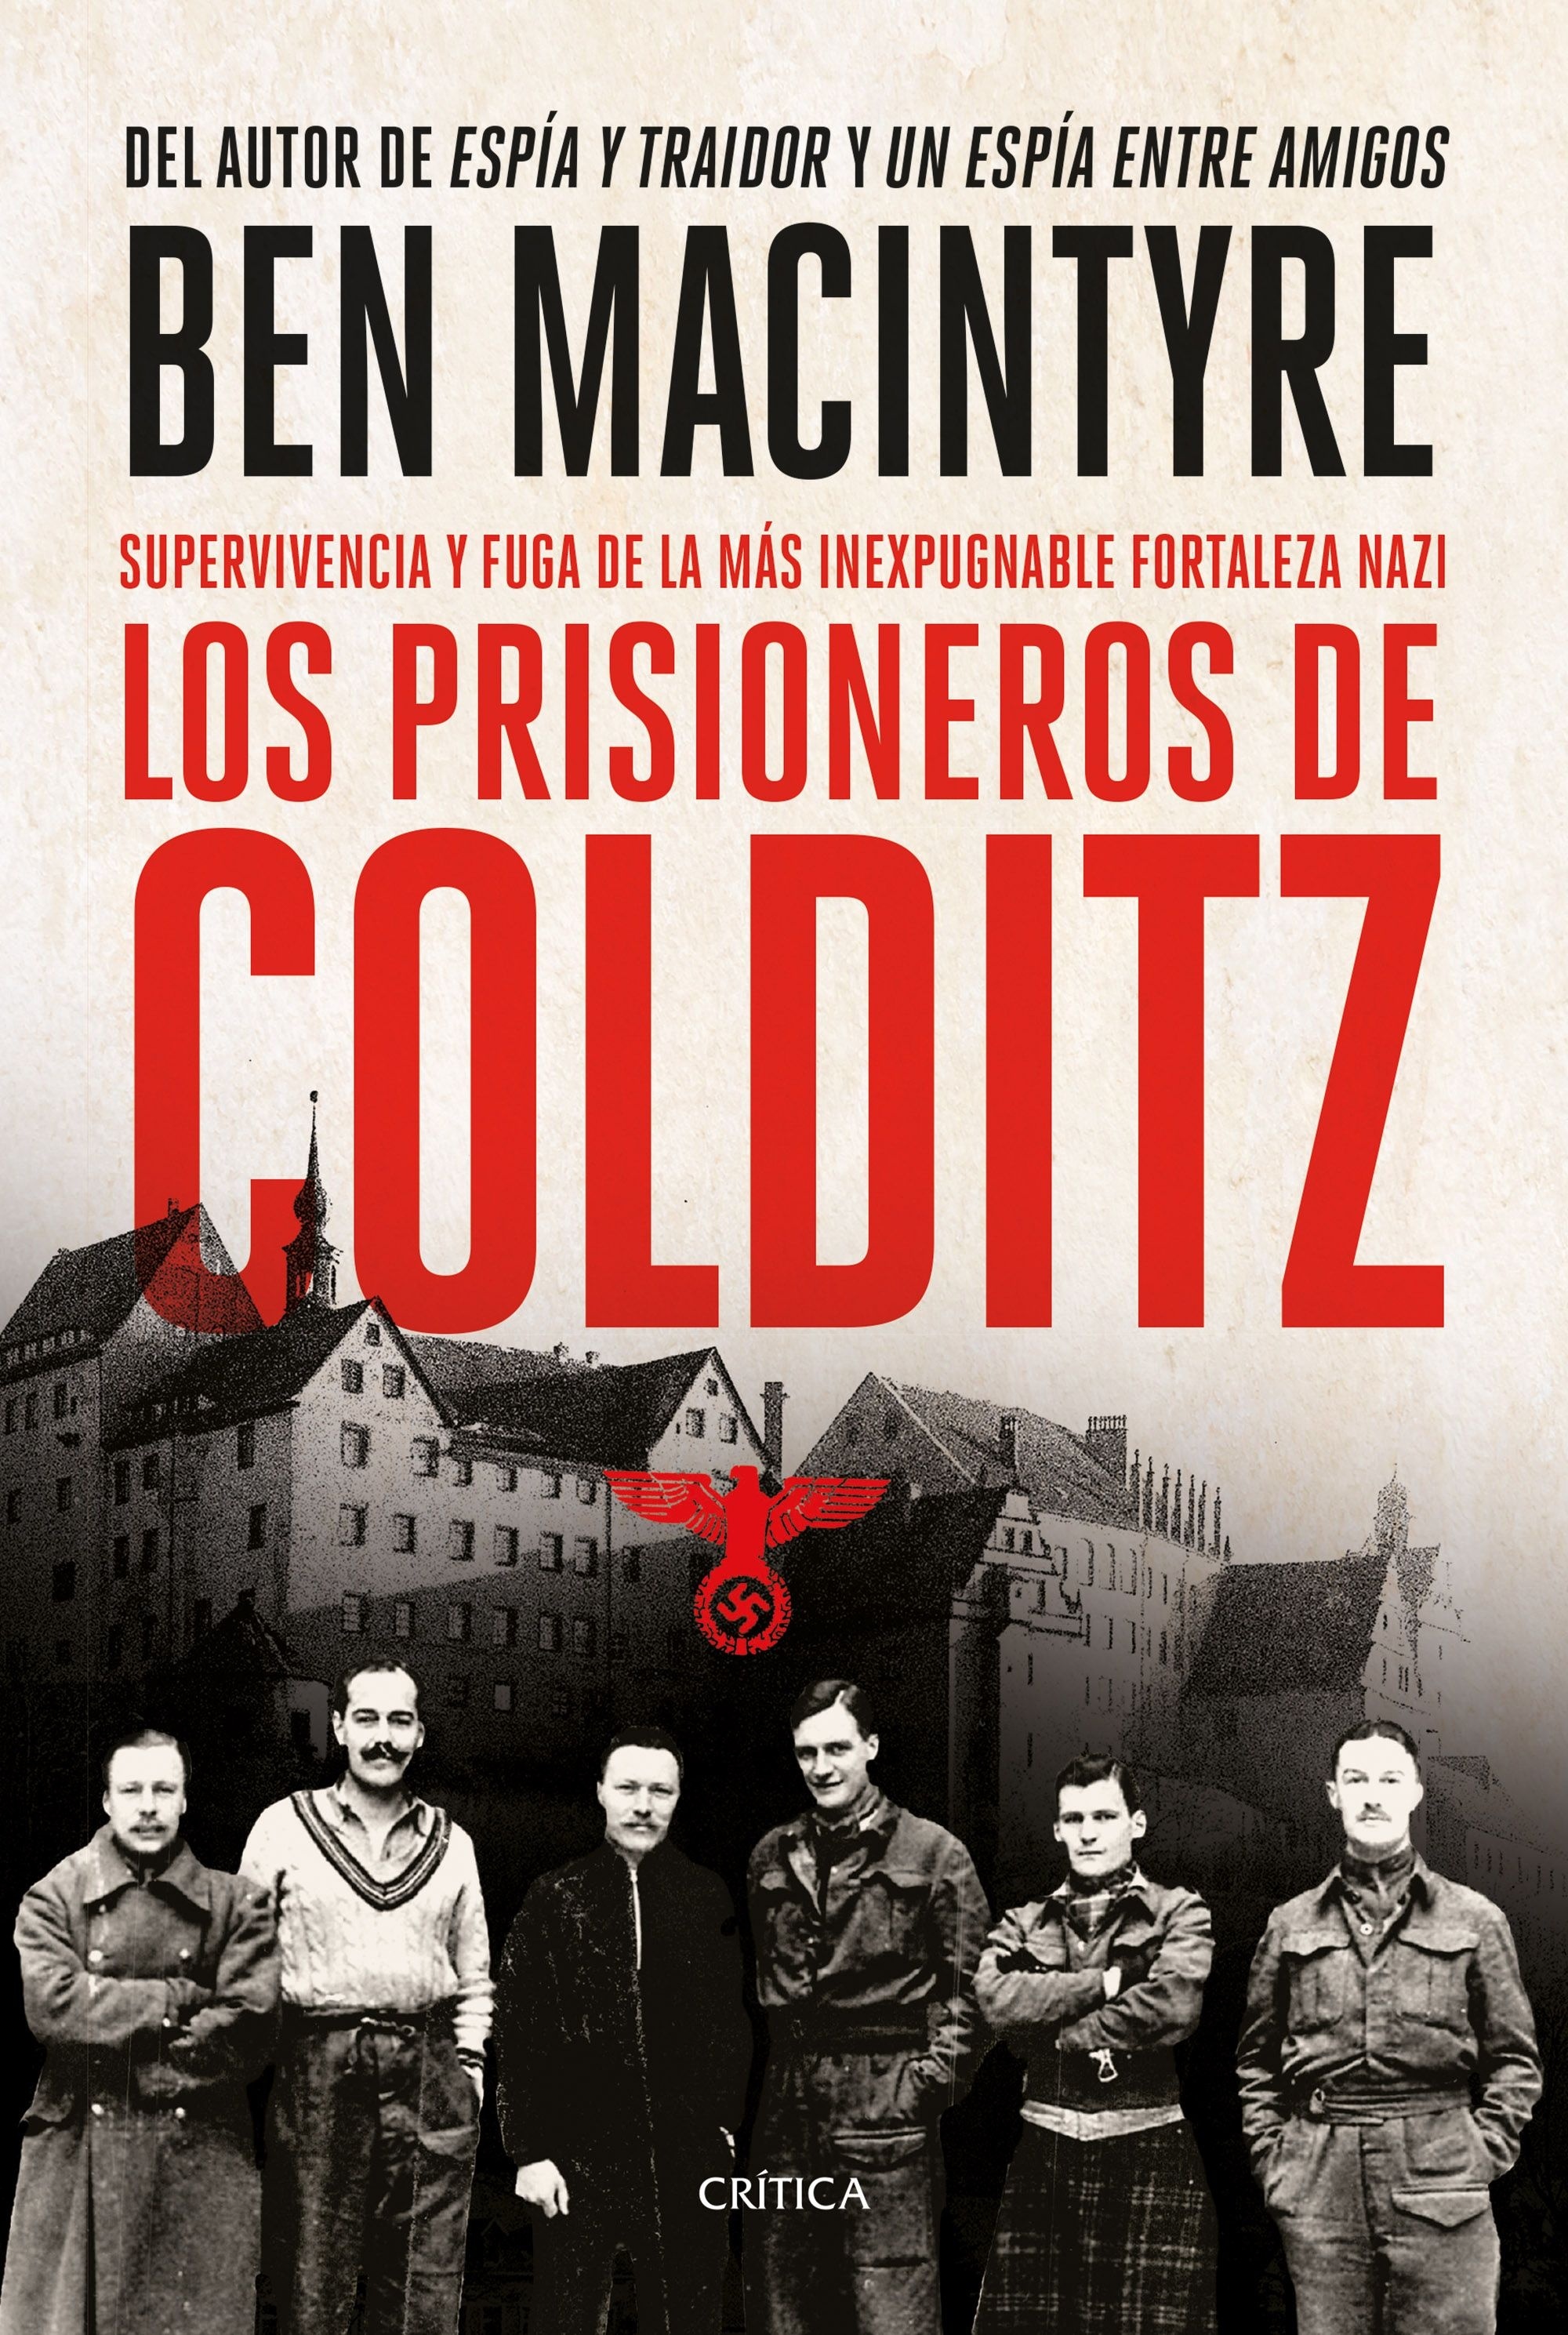 Prisioneros de Colditz, Los. 